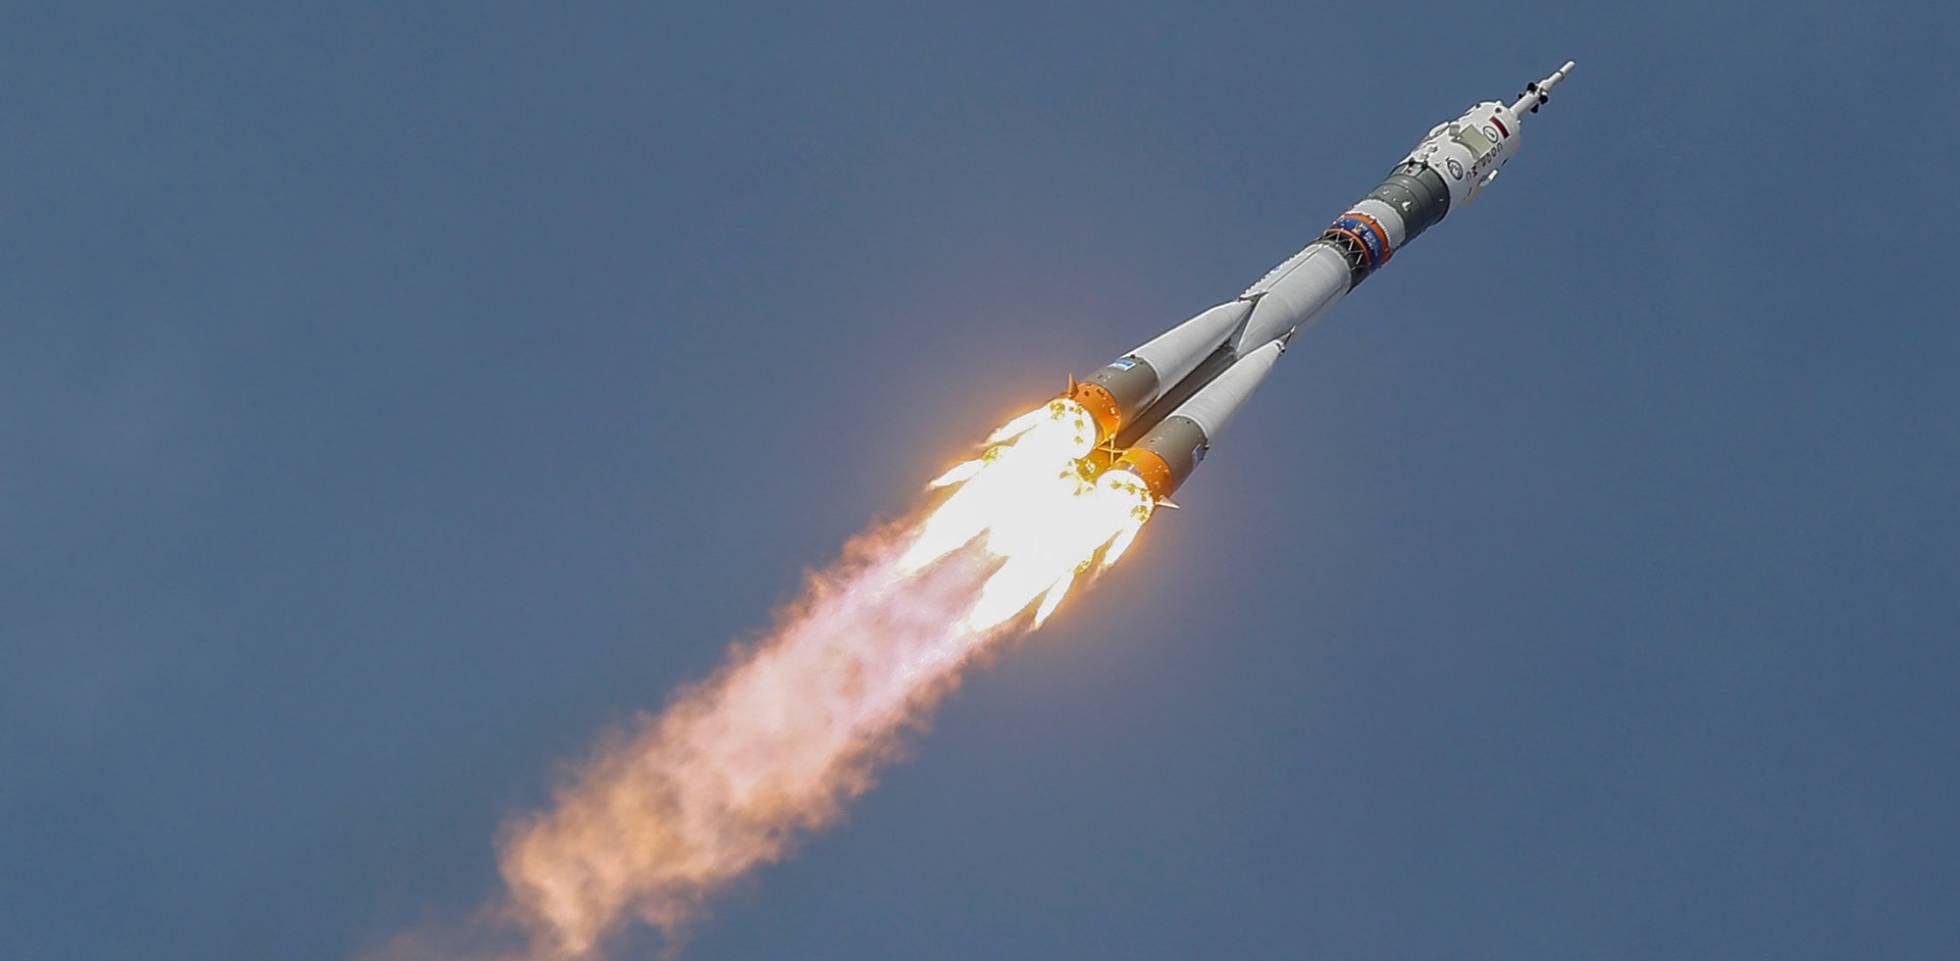 La Soyuz 1, en camino hacia el espacio. La experiencia resultó un fracaso en la carrera espacial soviética